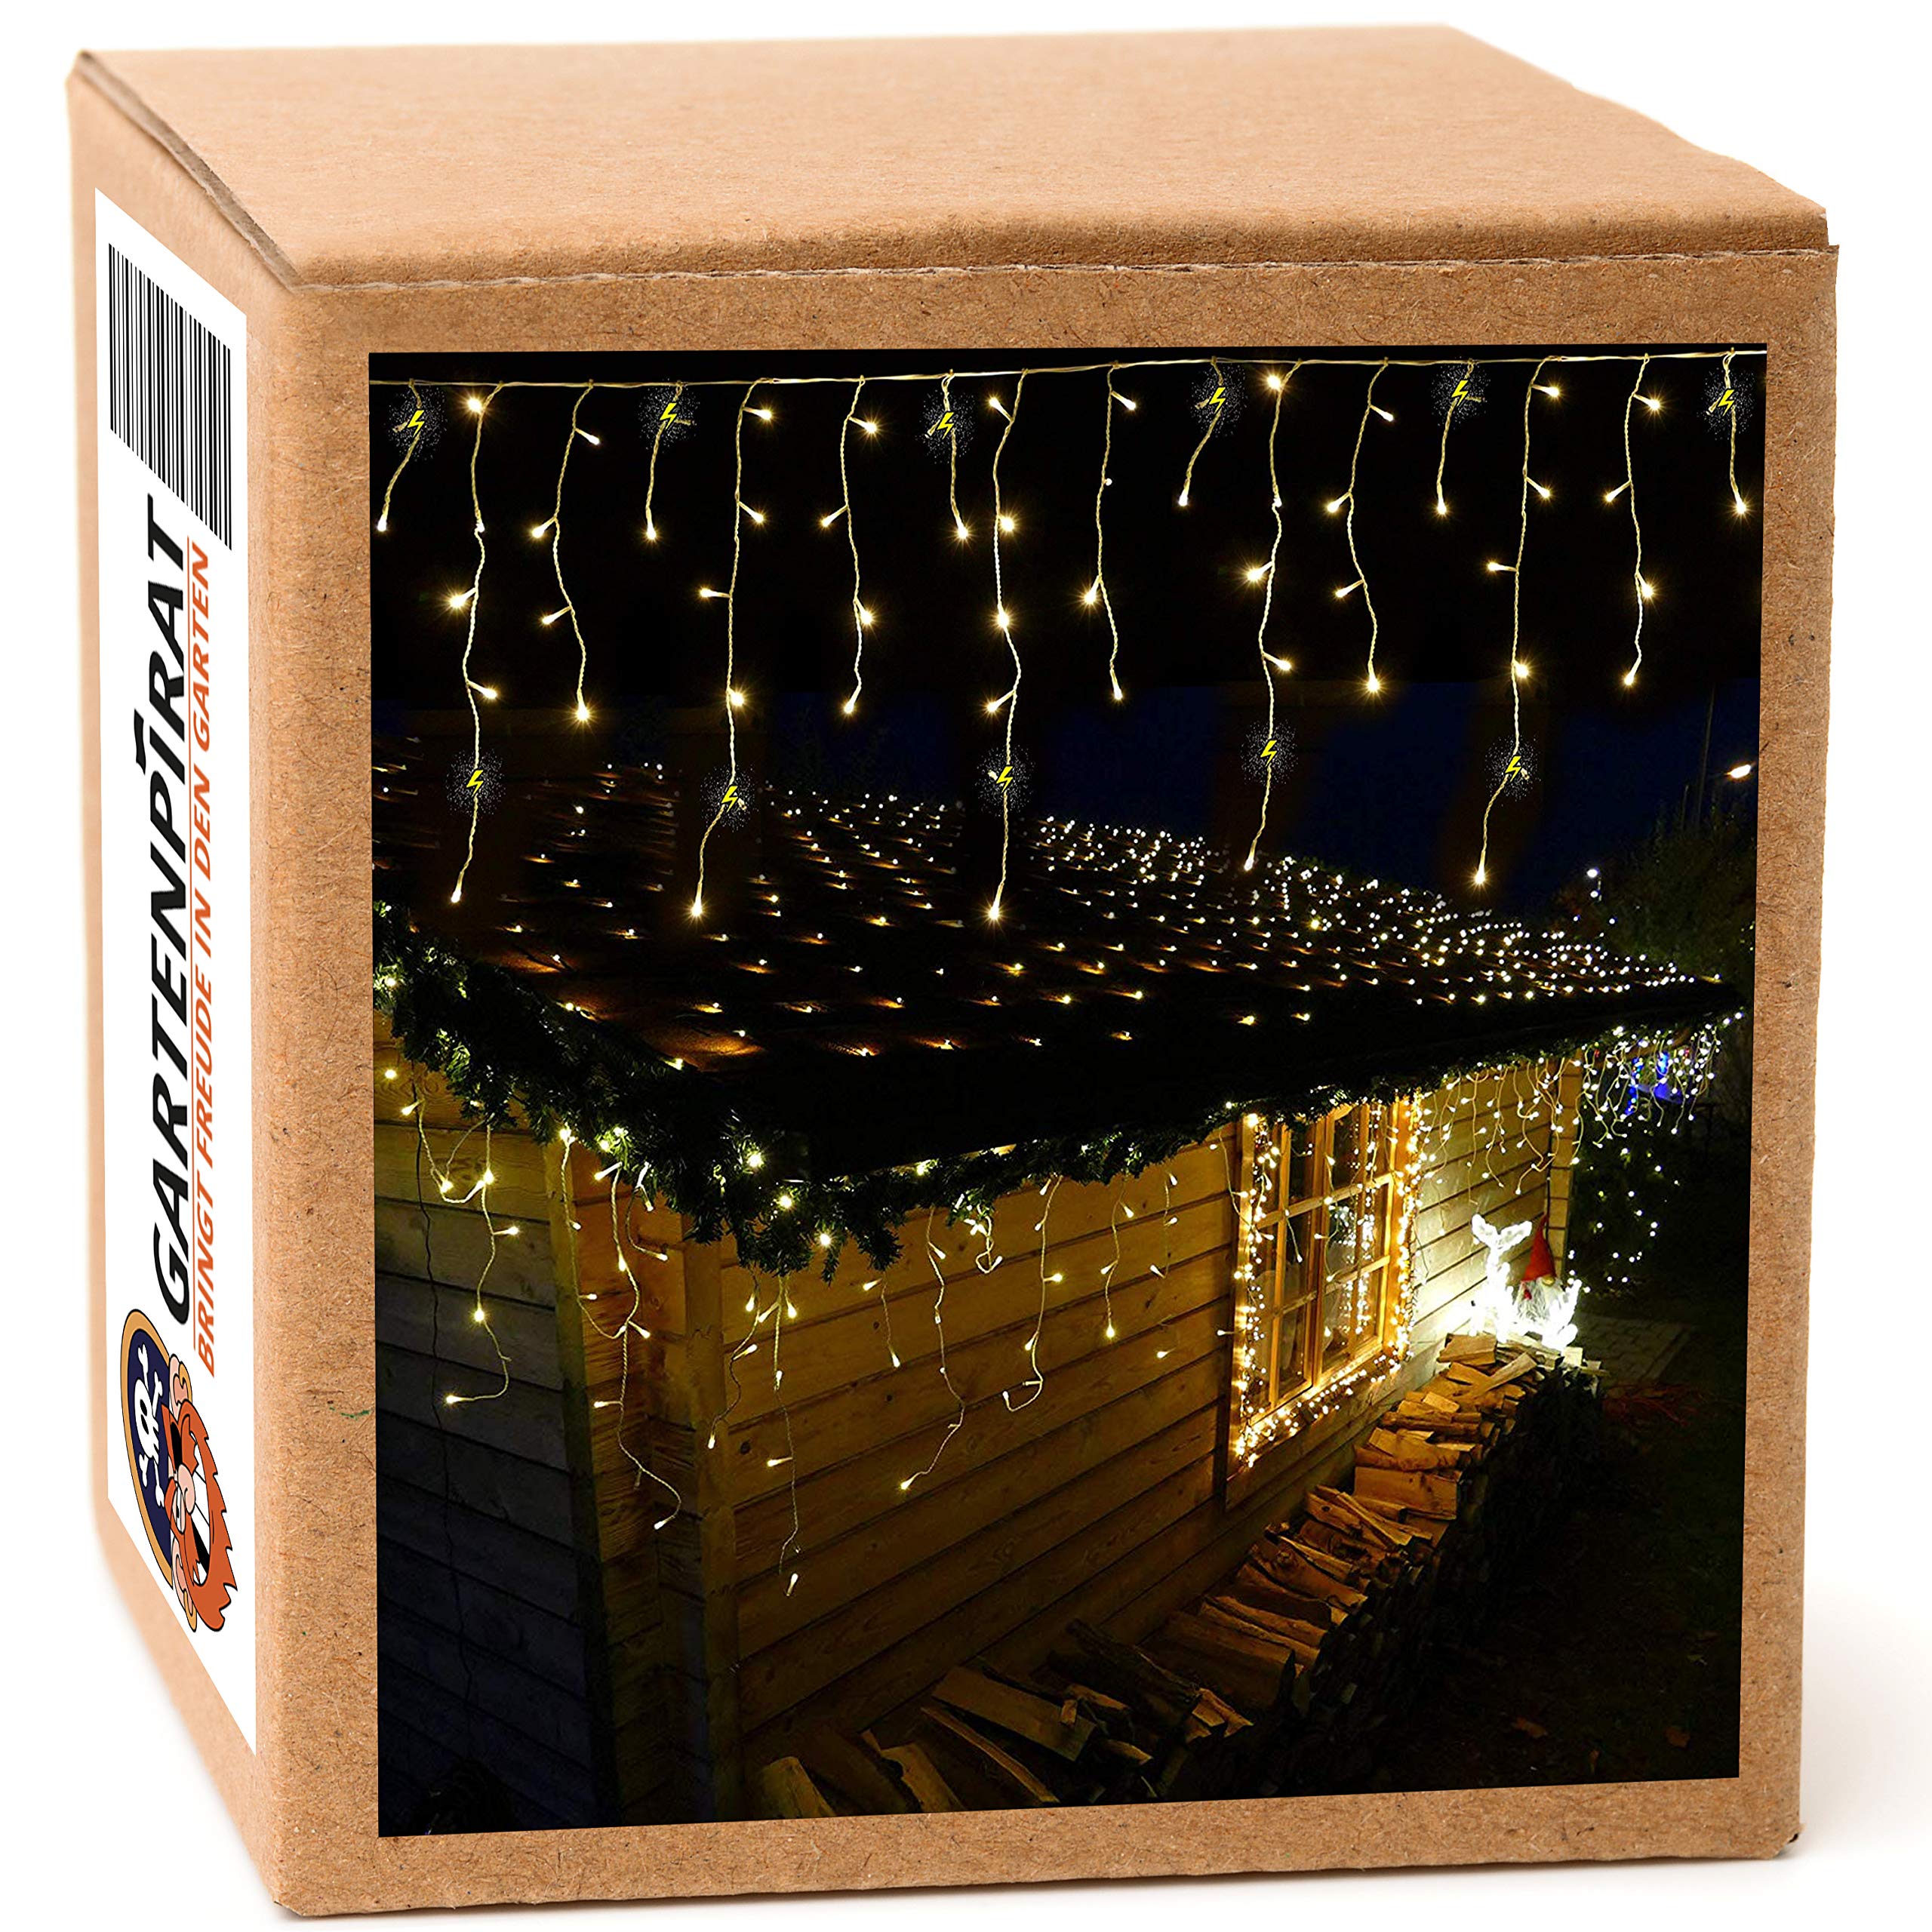 Gartenpirat Weihnachtsbaum Lichterkette warmweiß/bernsteinfarbe 24 m • LED-Lichterkette 960 LED außen innen • Timer blinkend Flash-Effekt